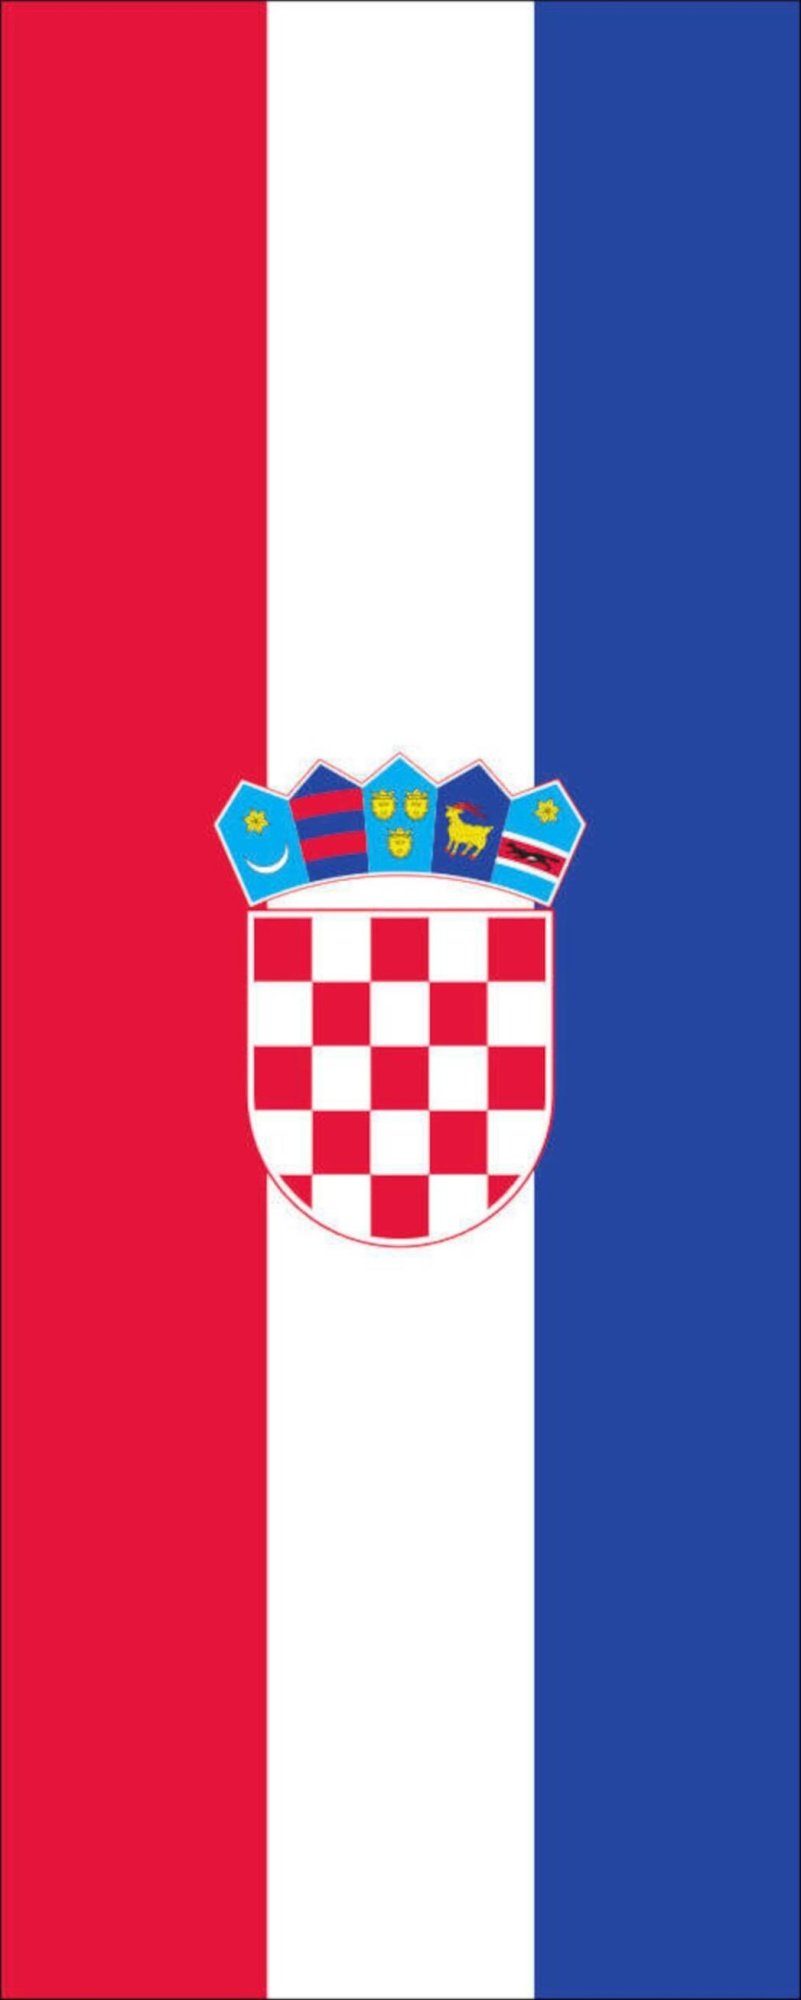 flaggenmeer Flagge Kroatien g/m² Flagge 110 Hochformat